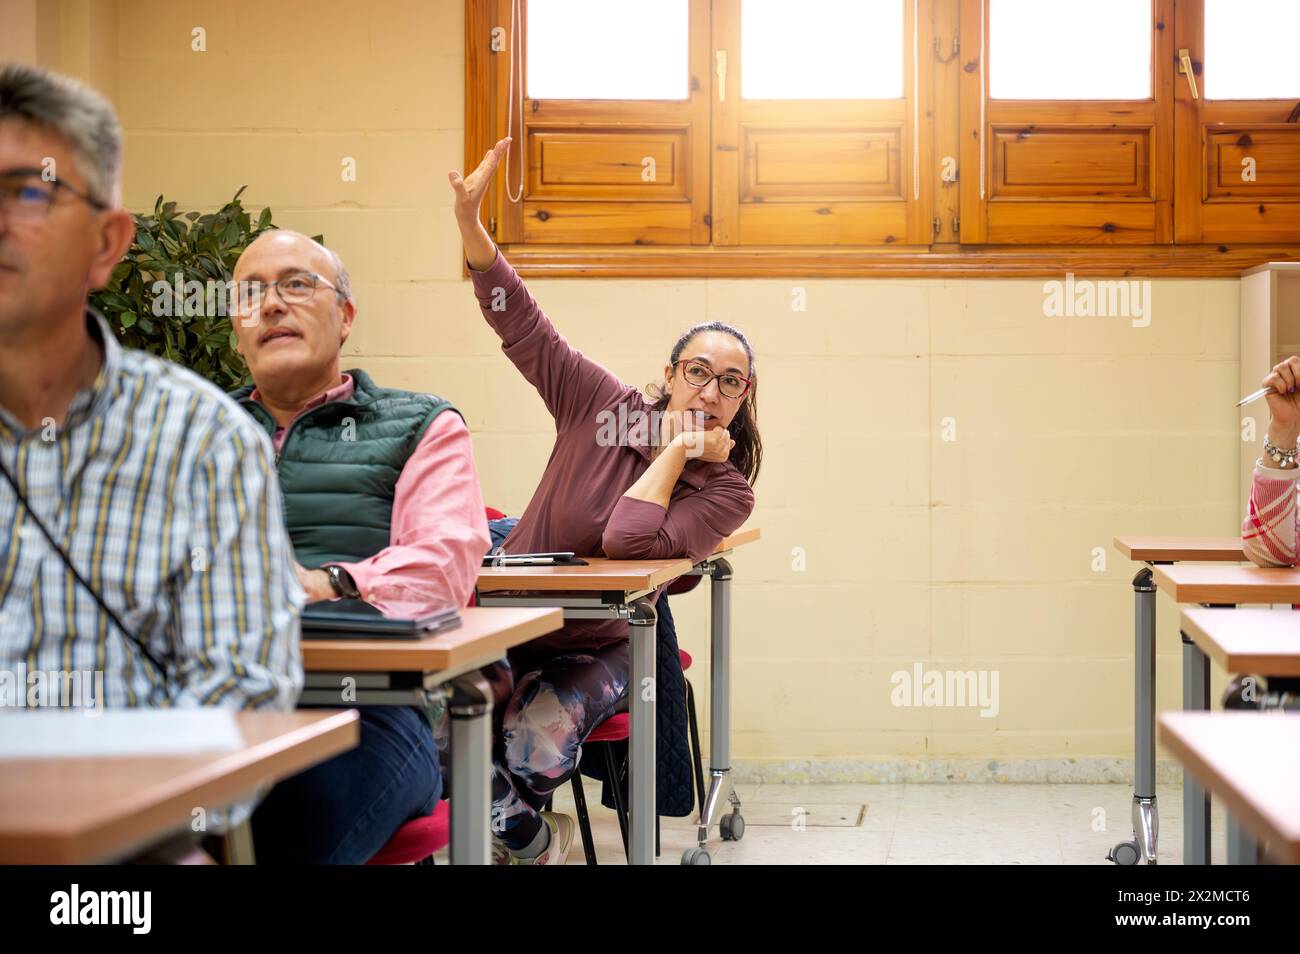 Una donna anziana alza con entusiasmo la mano in una classe tra colleghi, incarnando il concetto di apprendimento permanente e partecipazione attiva Foto Stock